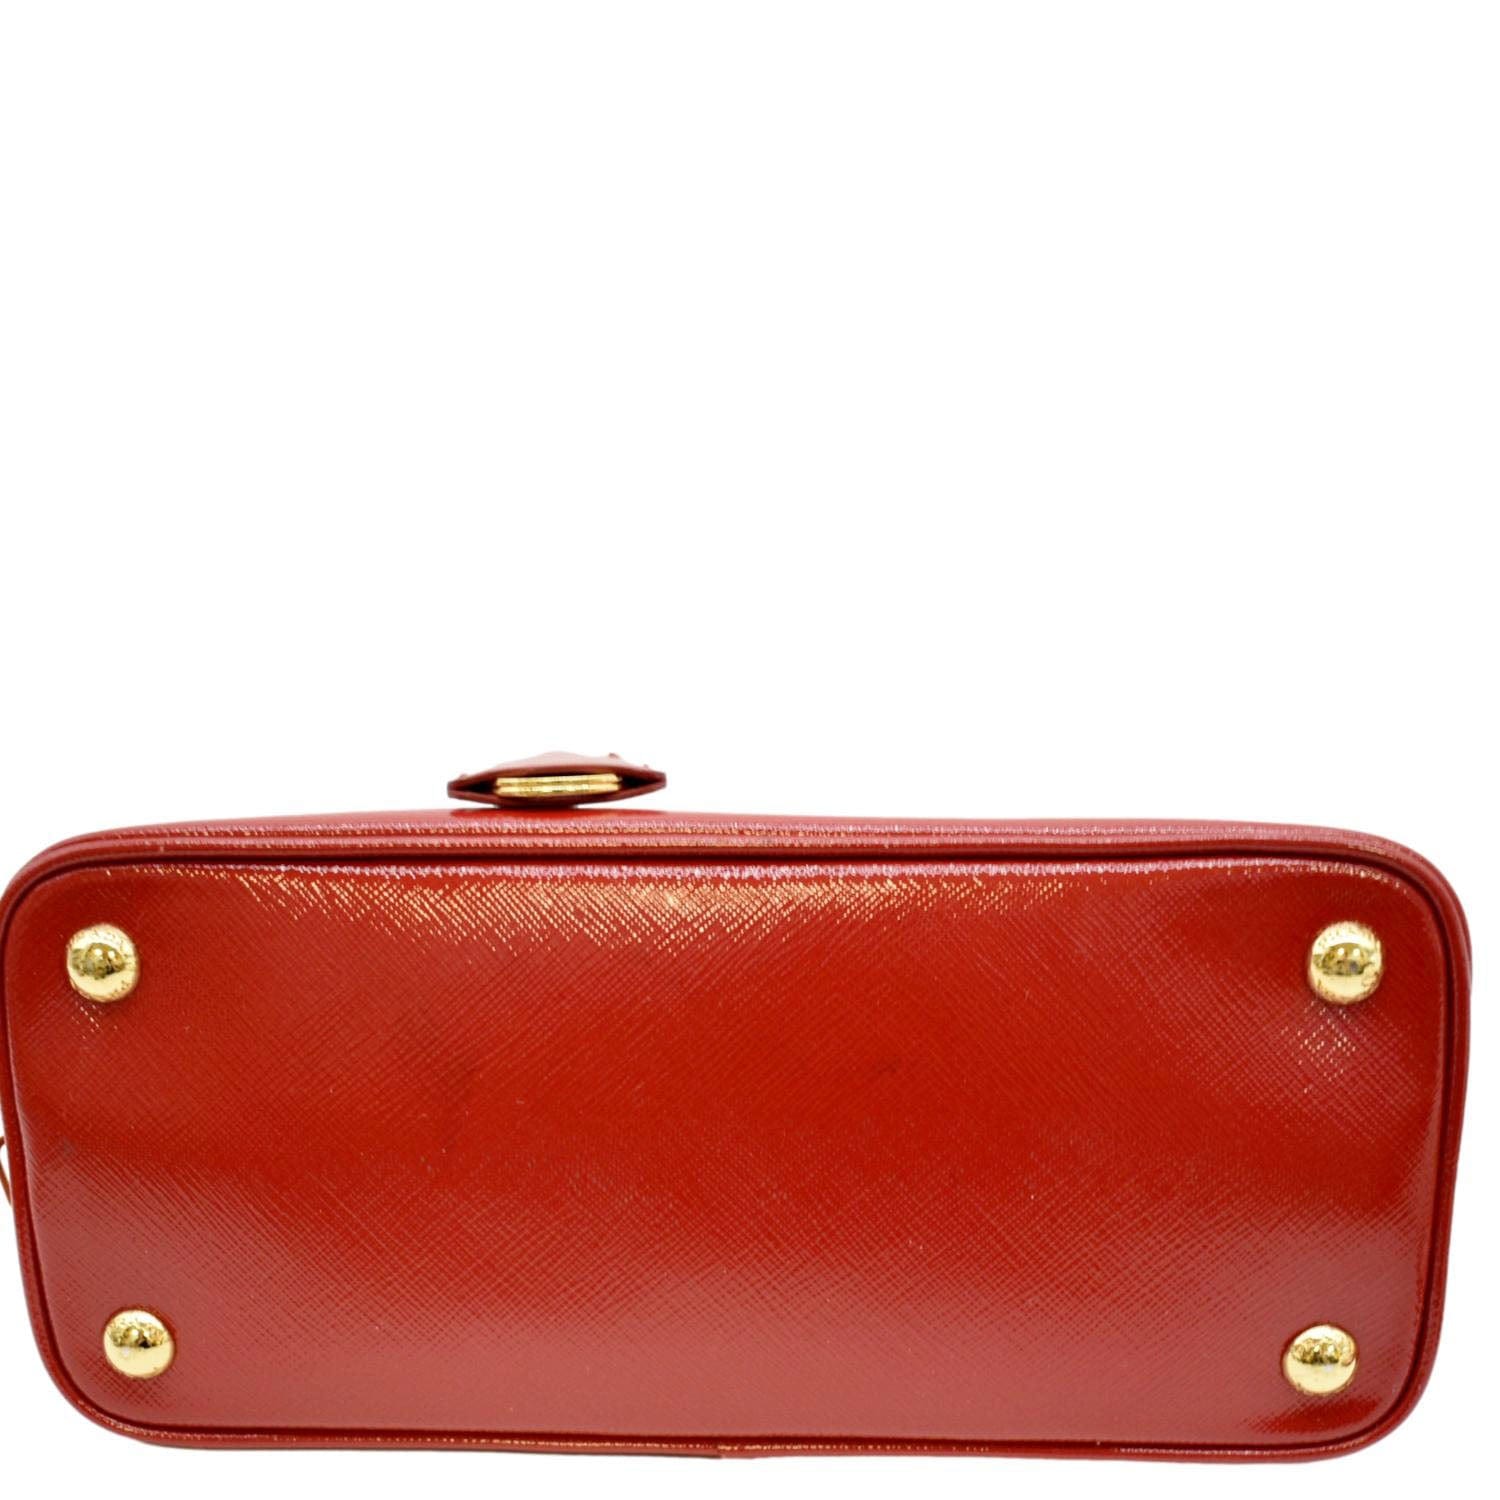 Prada Red Saffiano Leather Shoulder Bag